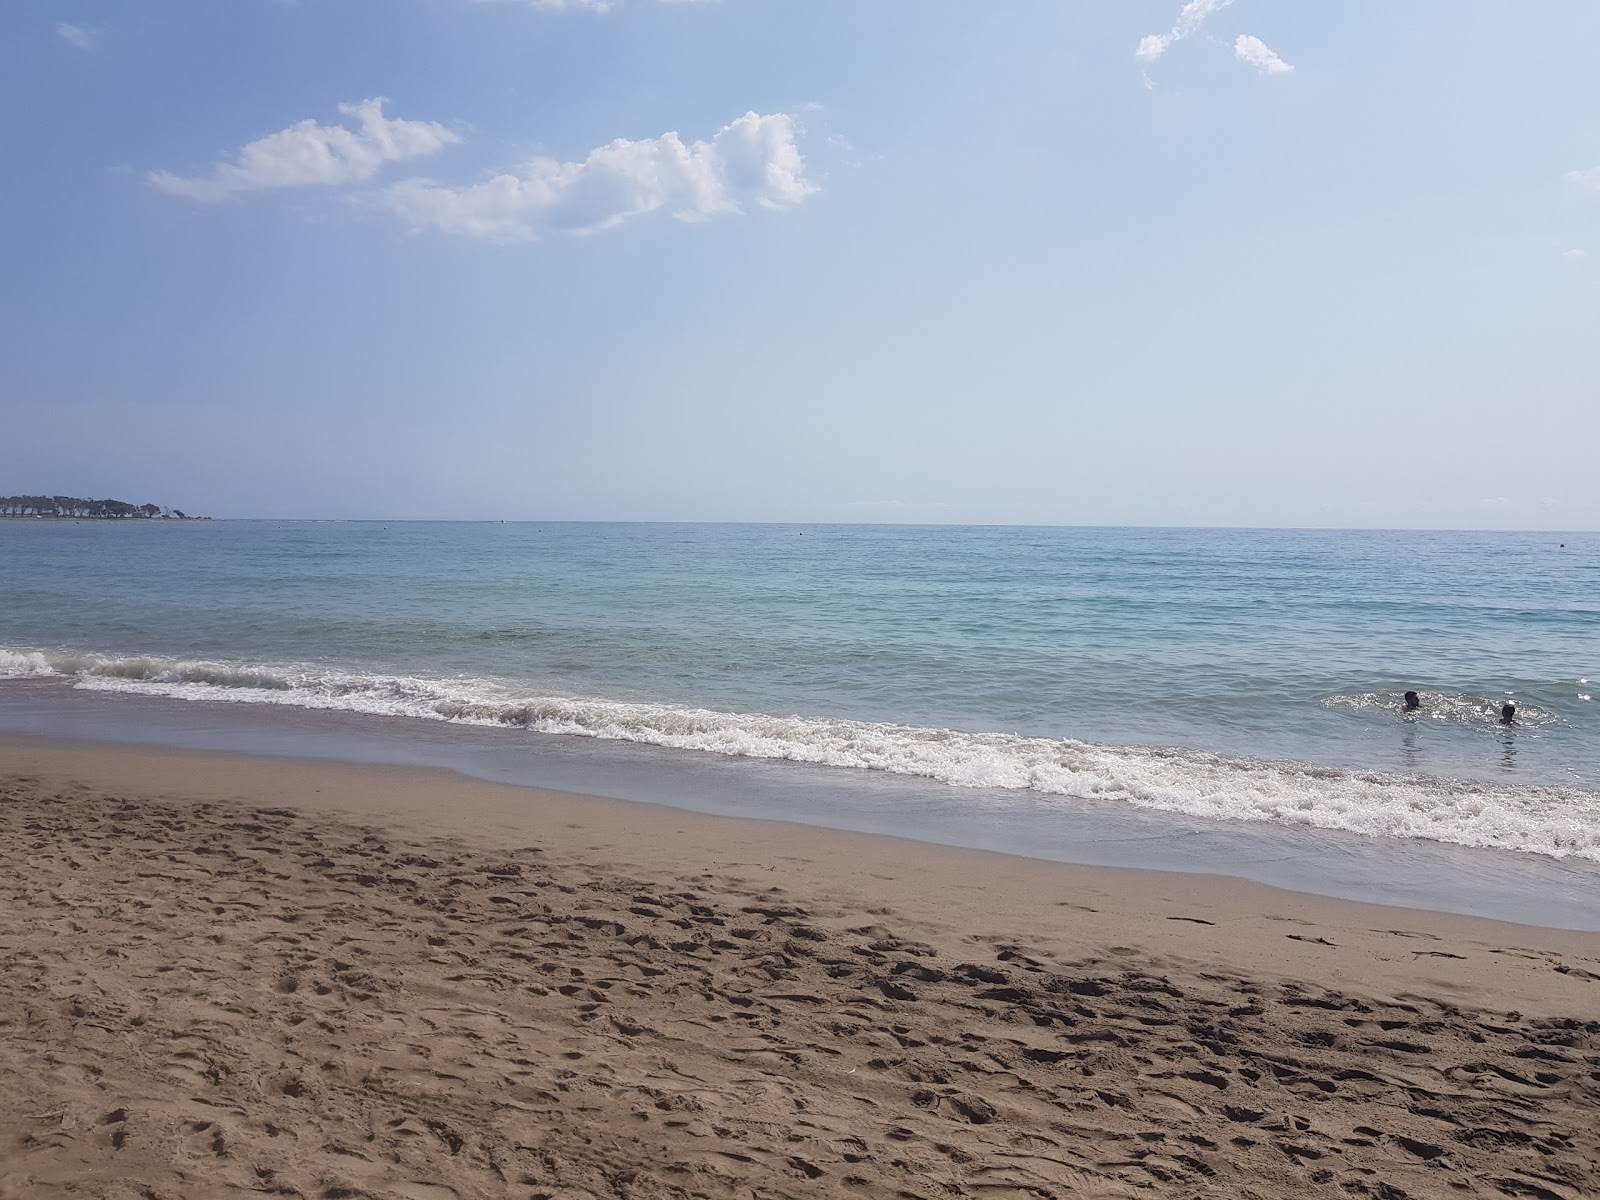 Playa de Quitapellejos'in fotoğrafı geniş ile birlikte